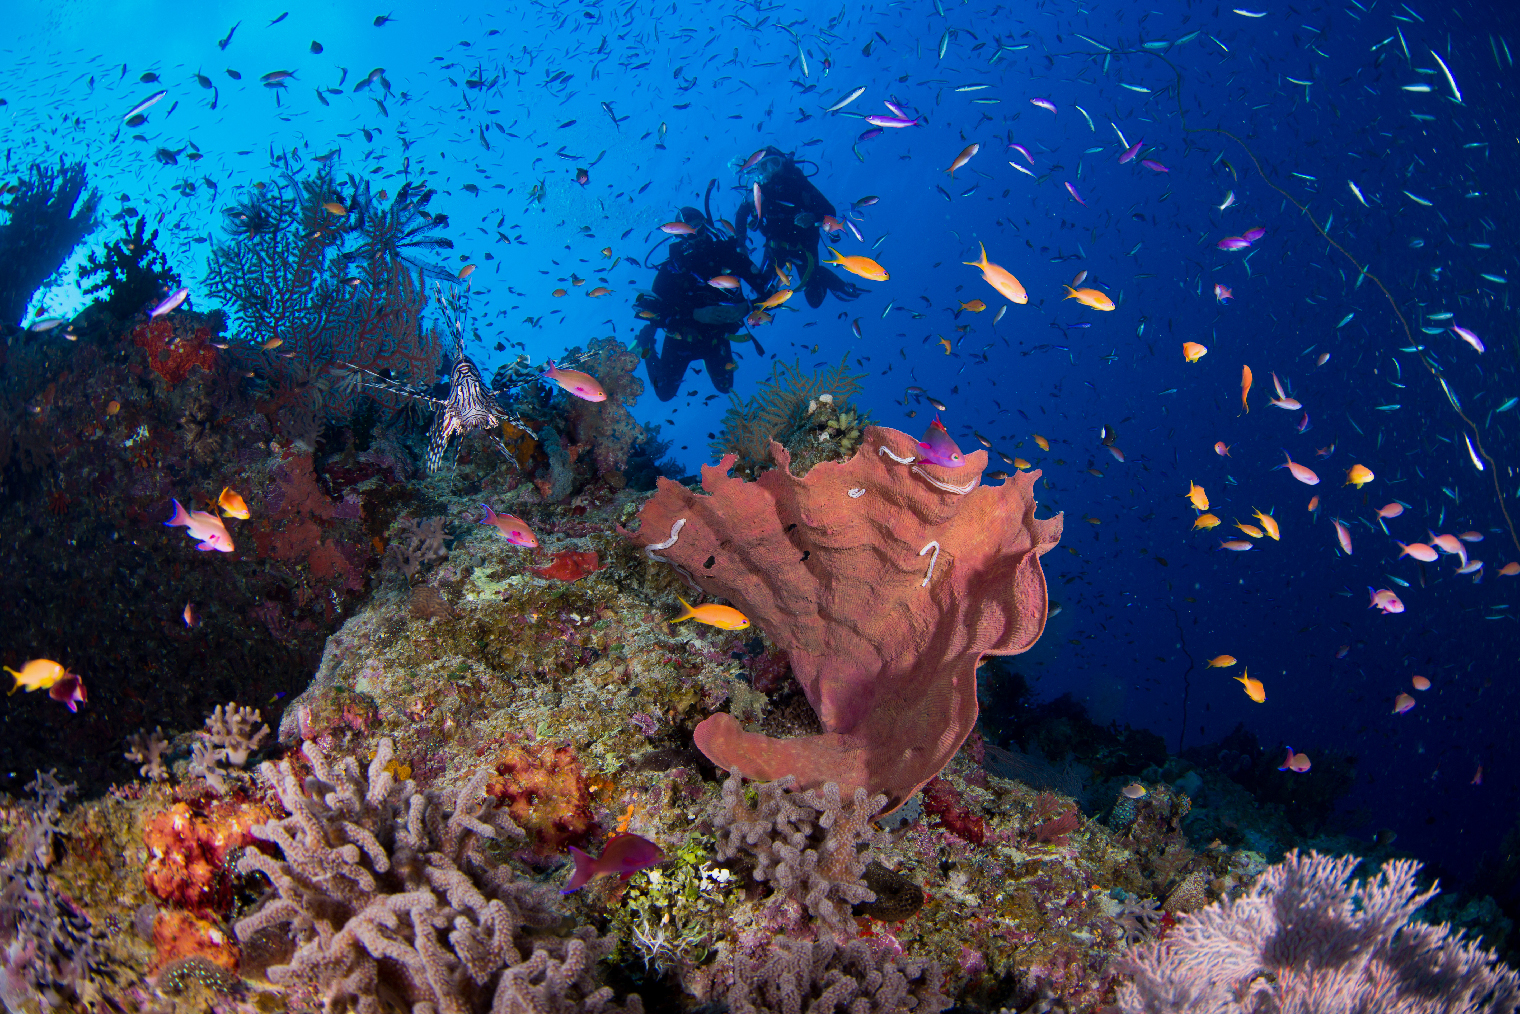 Большой Барьерный риф протянулся на 2500 километров. Туристам разрешено посещать только некоторые острова гряды. Фото: Islandjems — Jemma Craig / Shutterstock